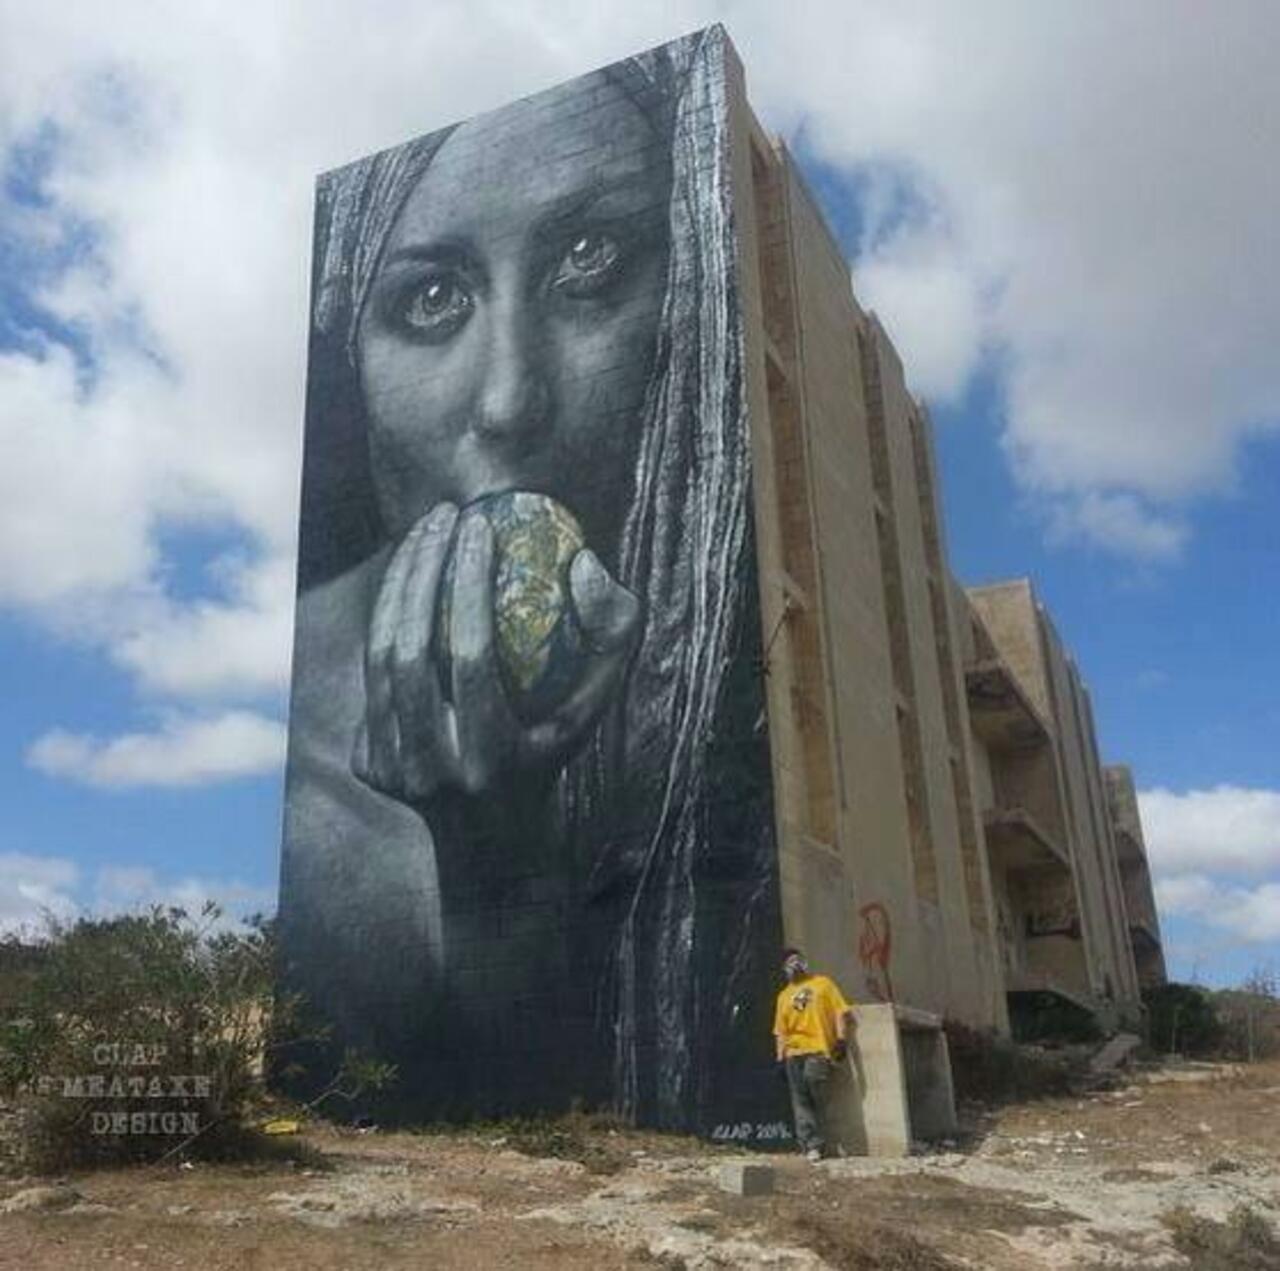 Artist Meataxe new awesome large scale Street Art mural in Malta #art #graffiti #mural #streetart http://t.co/vm9sVDjHS2